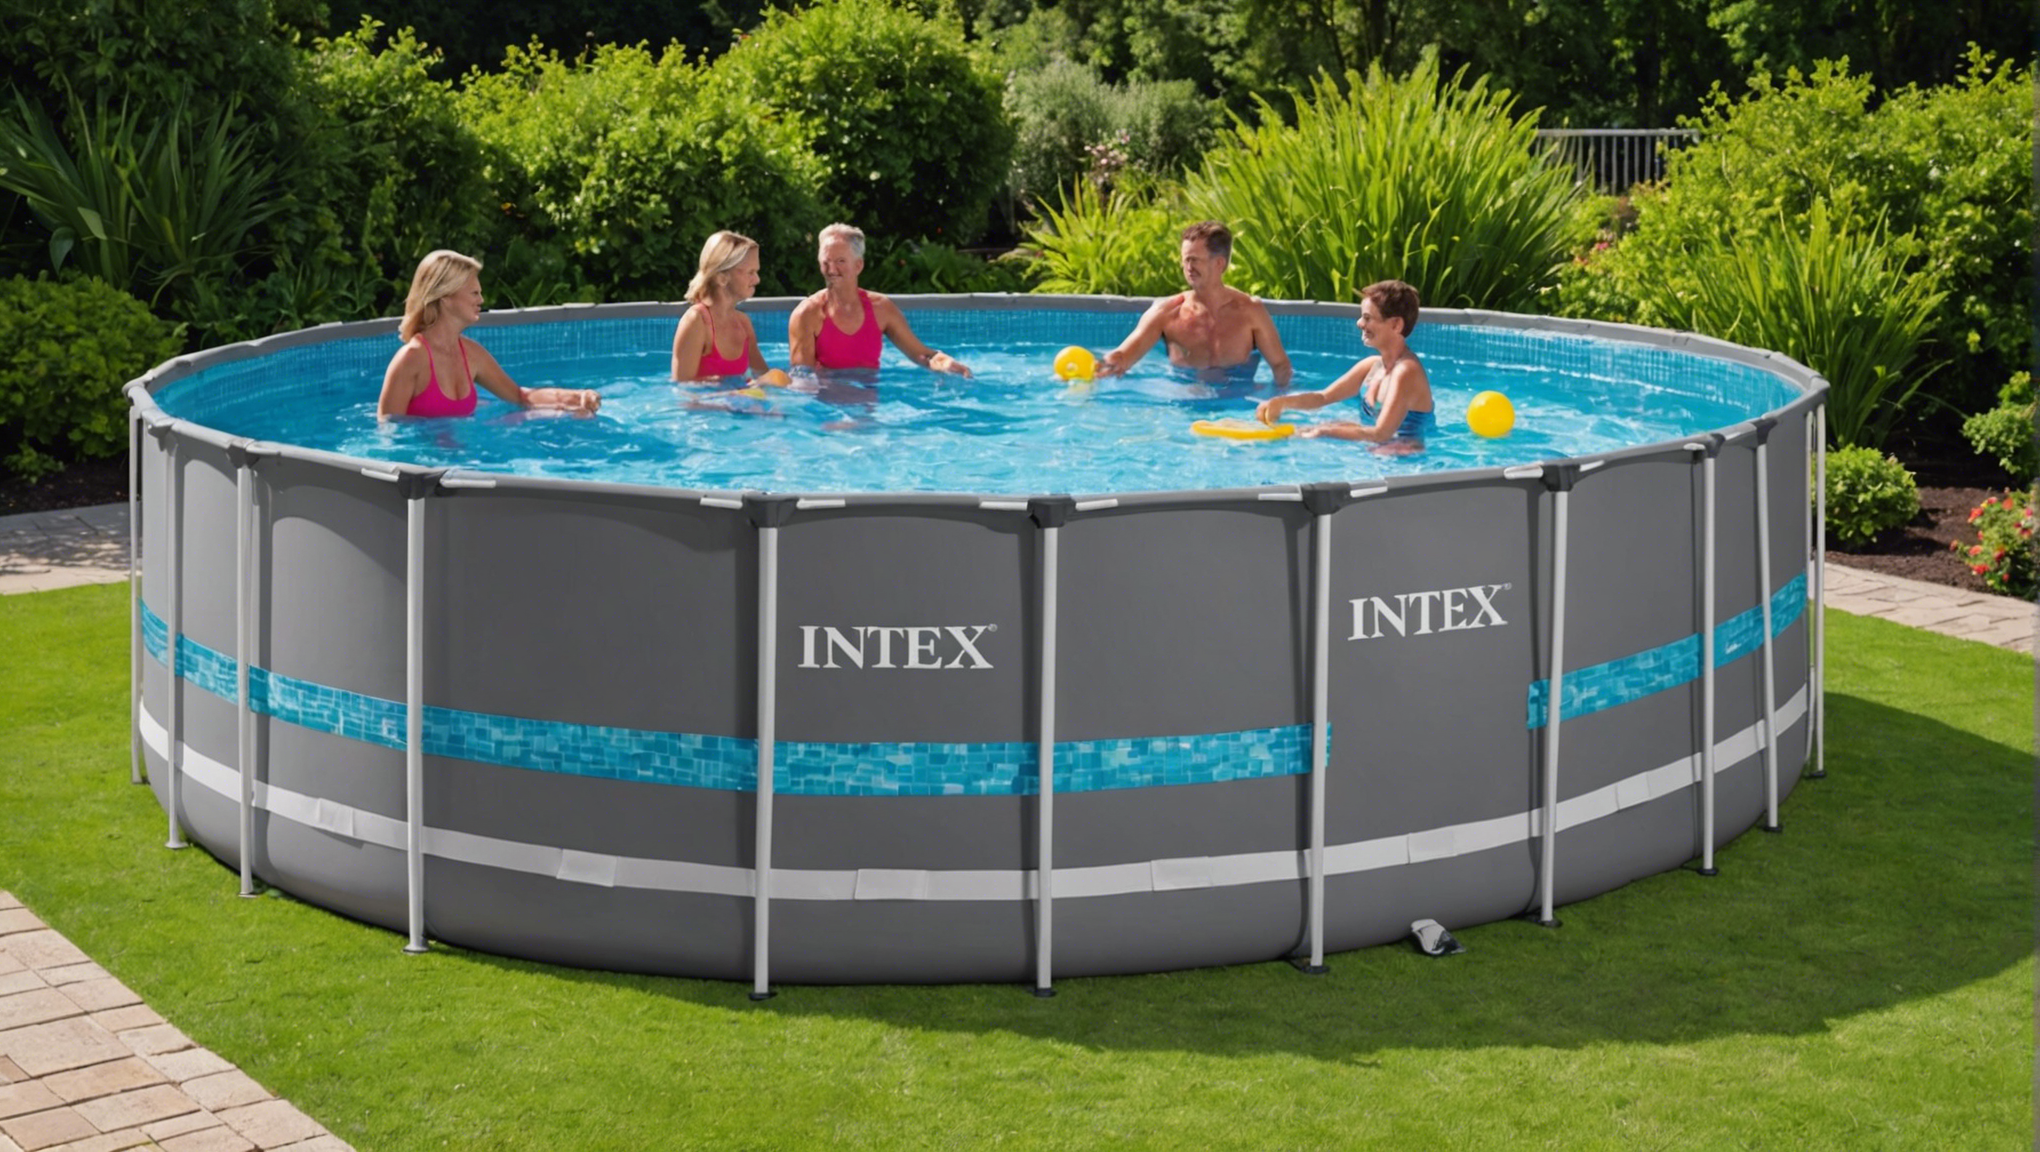 découvrez les avantages de choisir une piscine intex pour votre jardin et profitez d'un espace de détente et de loisirs à domicile grâce à une installation facile et des modèles adaptés à vos besoins.